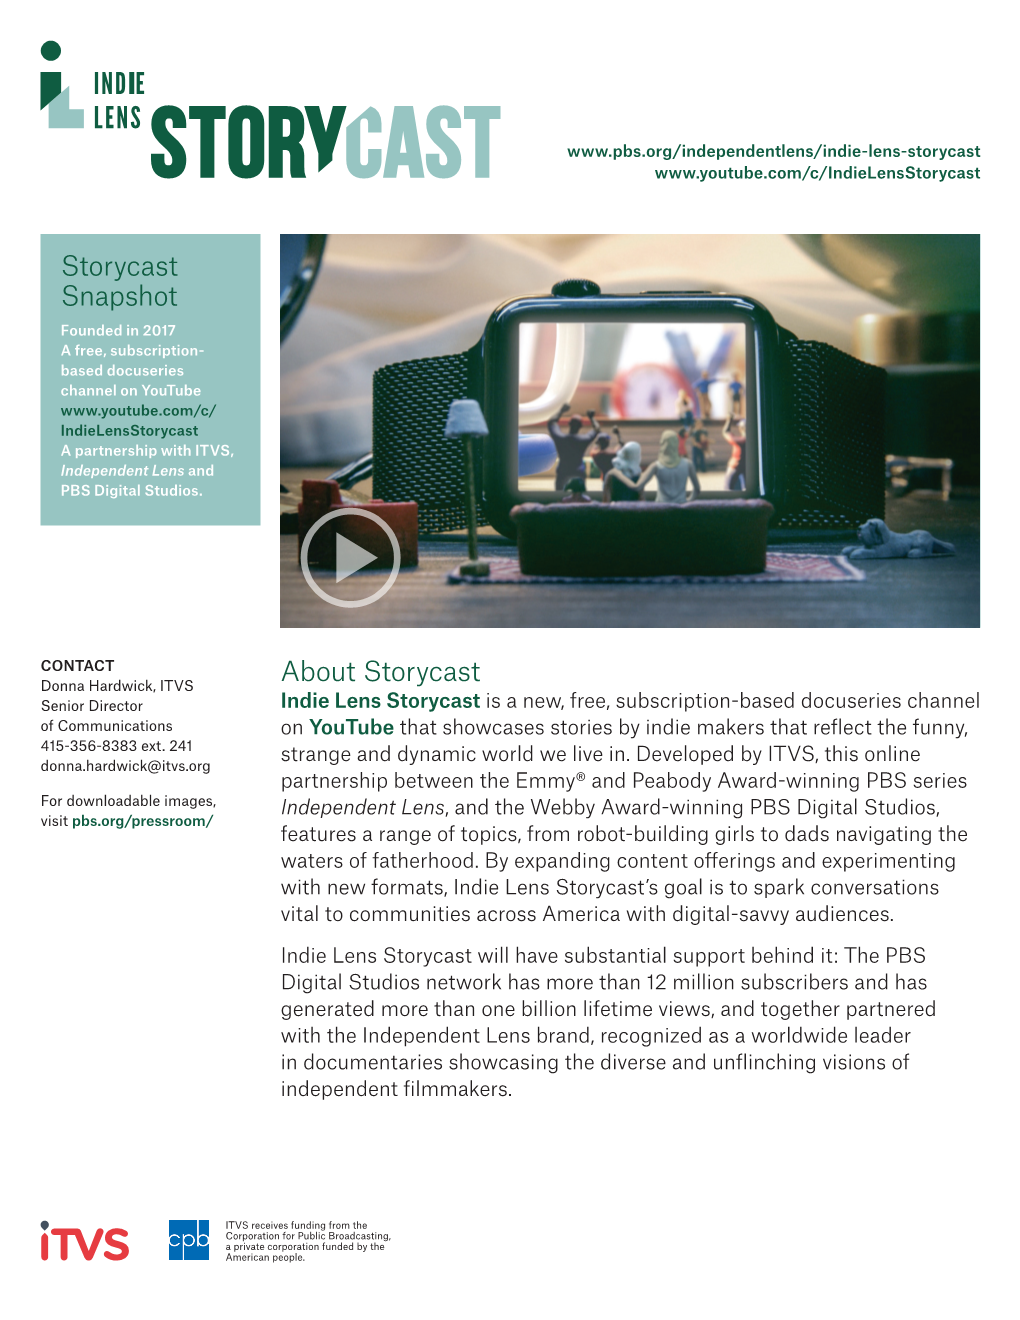 About Storycast Storycast Snapshot